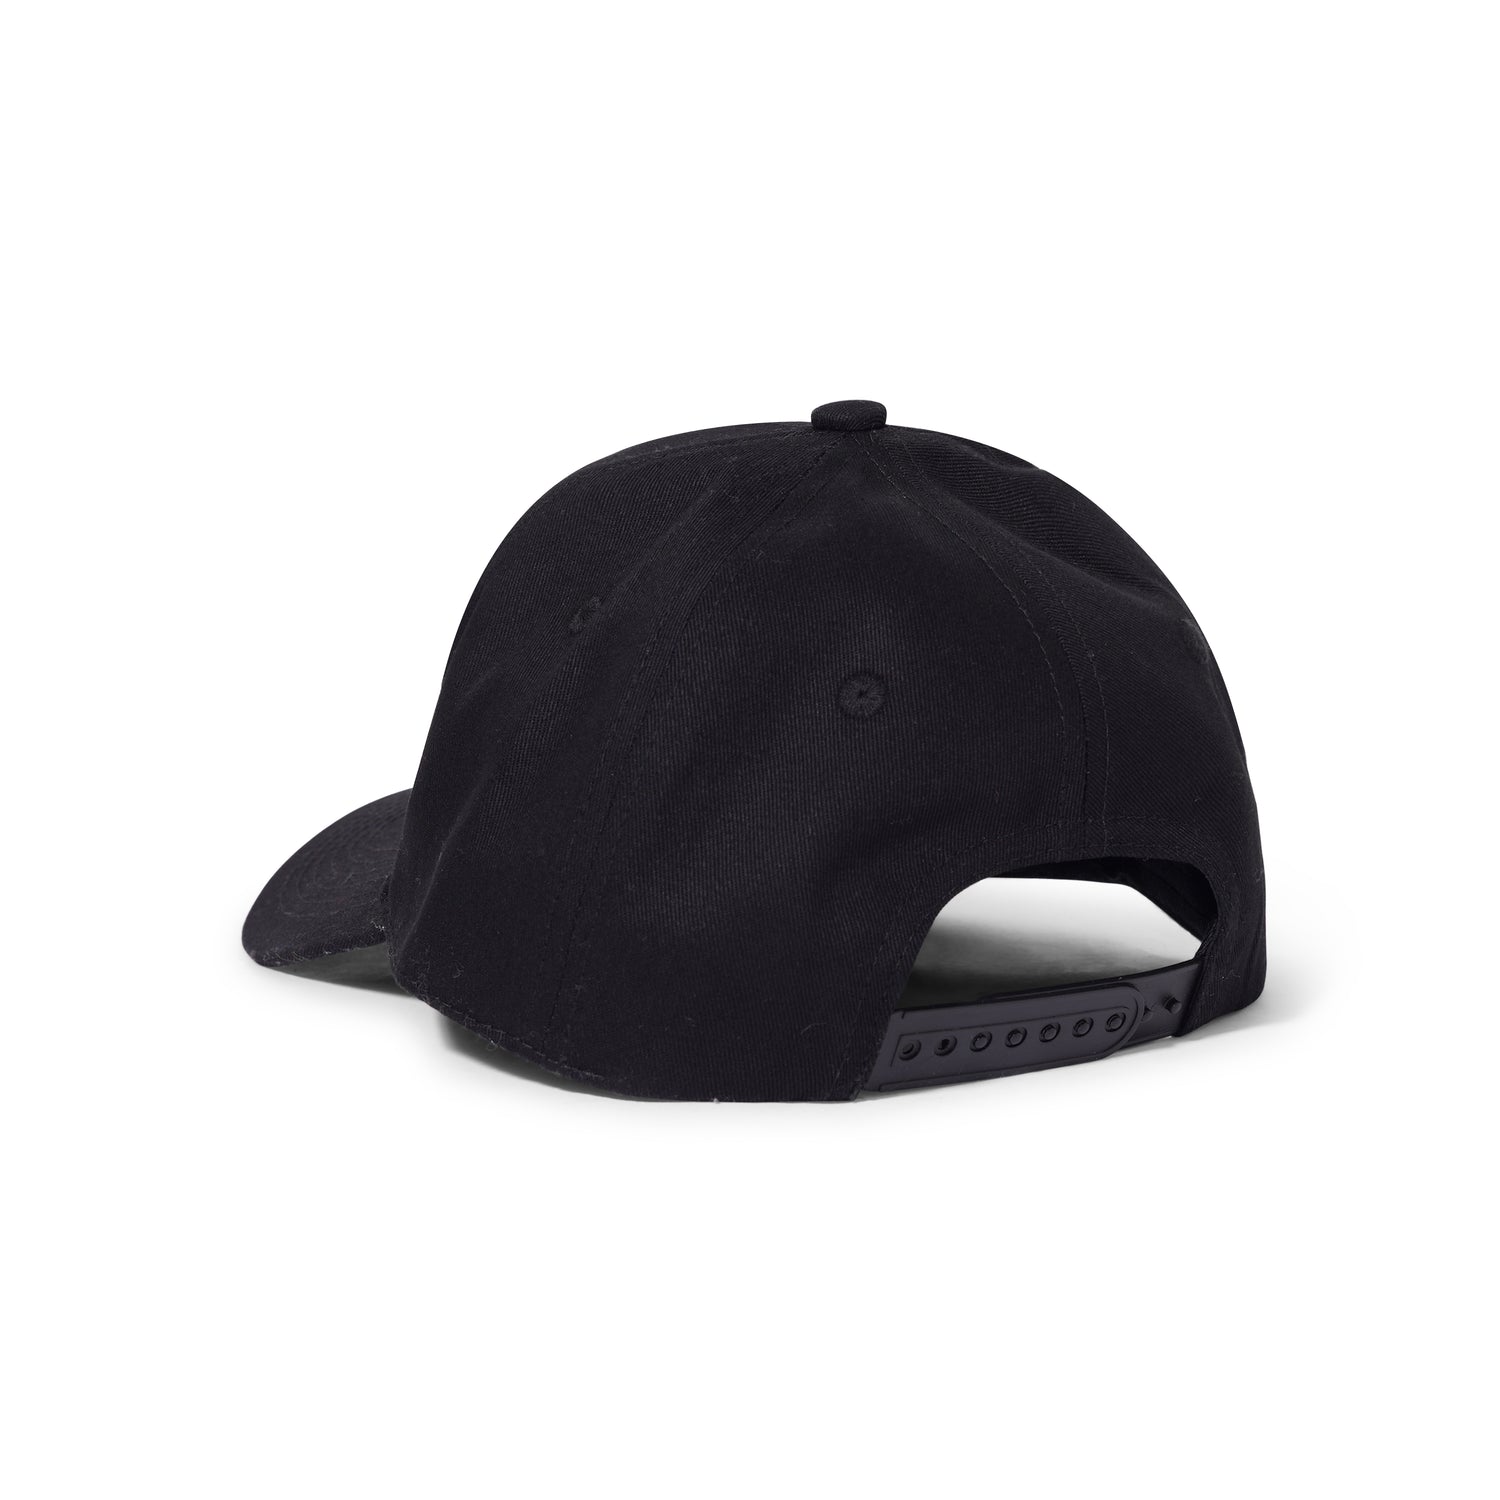 Star Hat, Black